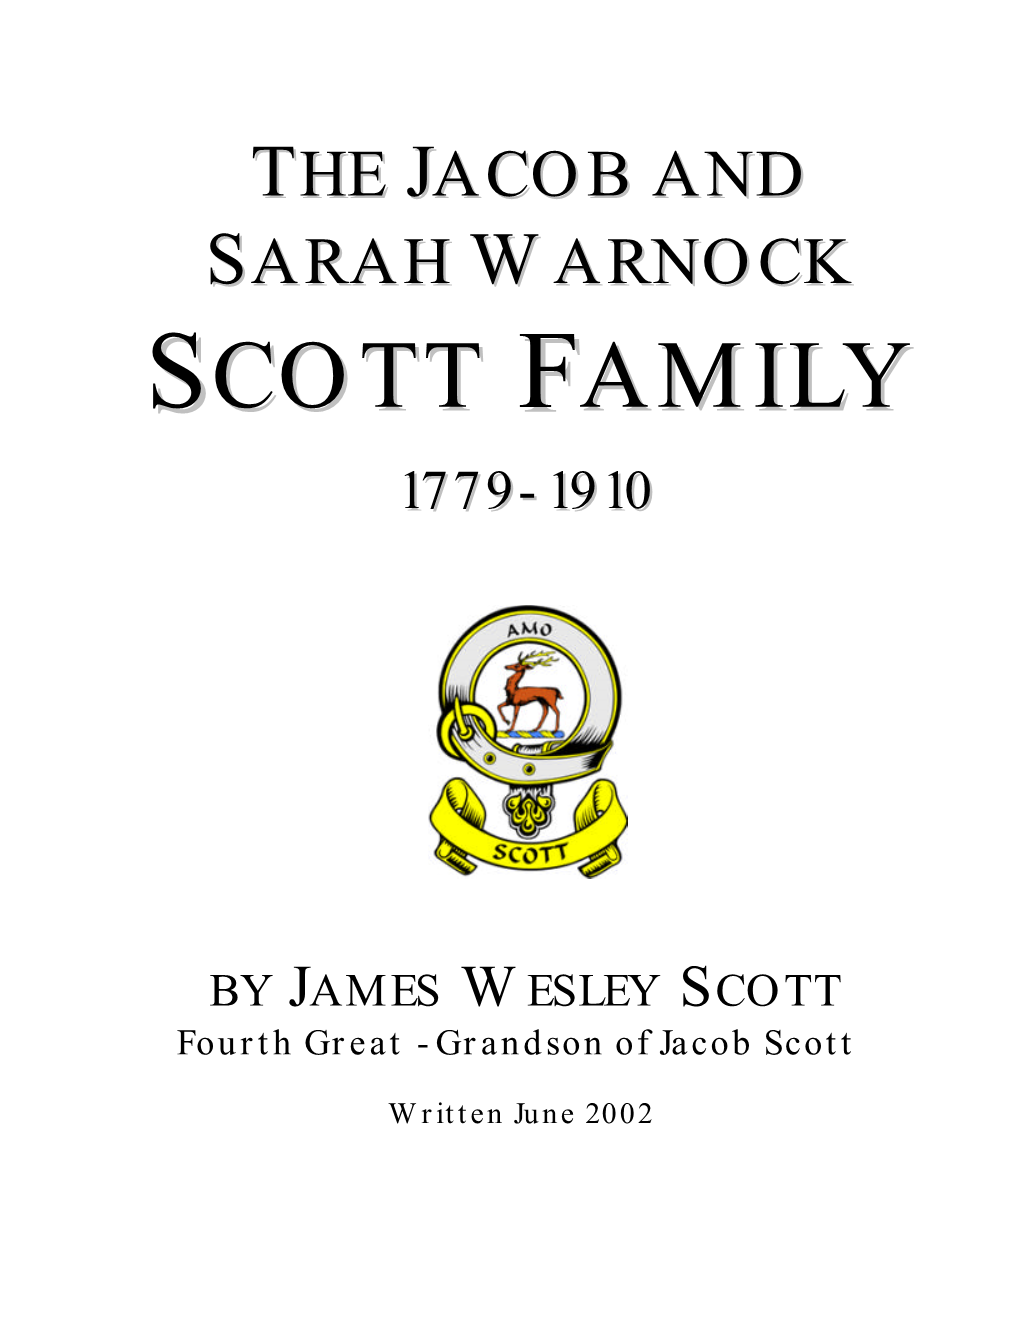 Jacob and Sarah Scott Family History